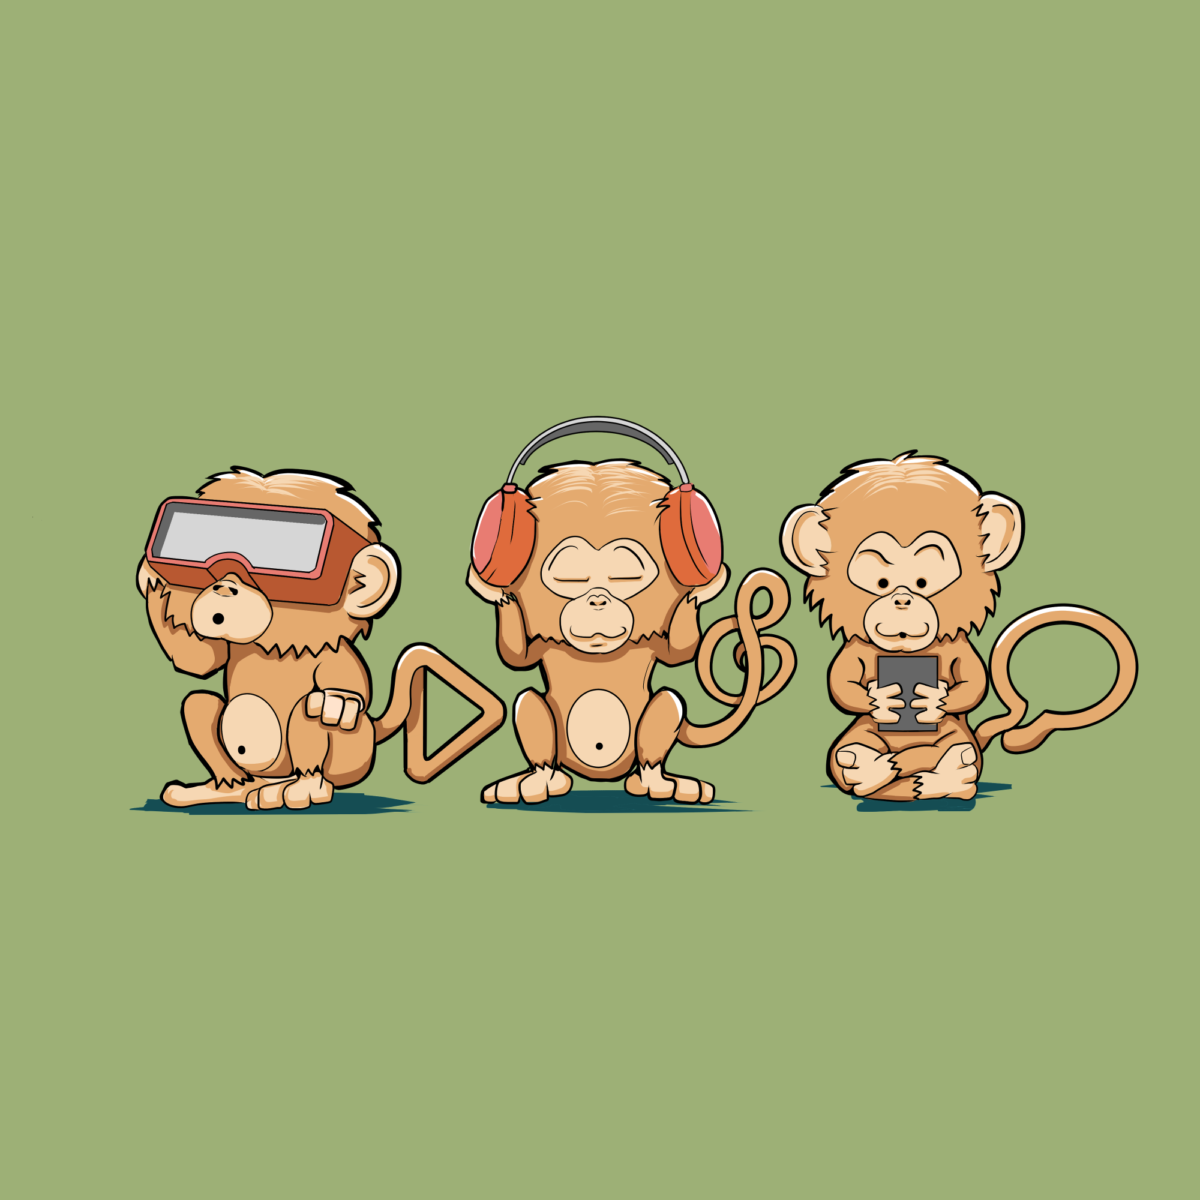 Обезьяна 3 буквы. Три обезьяны. Три обезьянки. Три мартышки. 3 Обезьянки смешные.